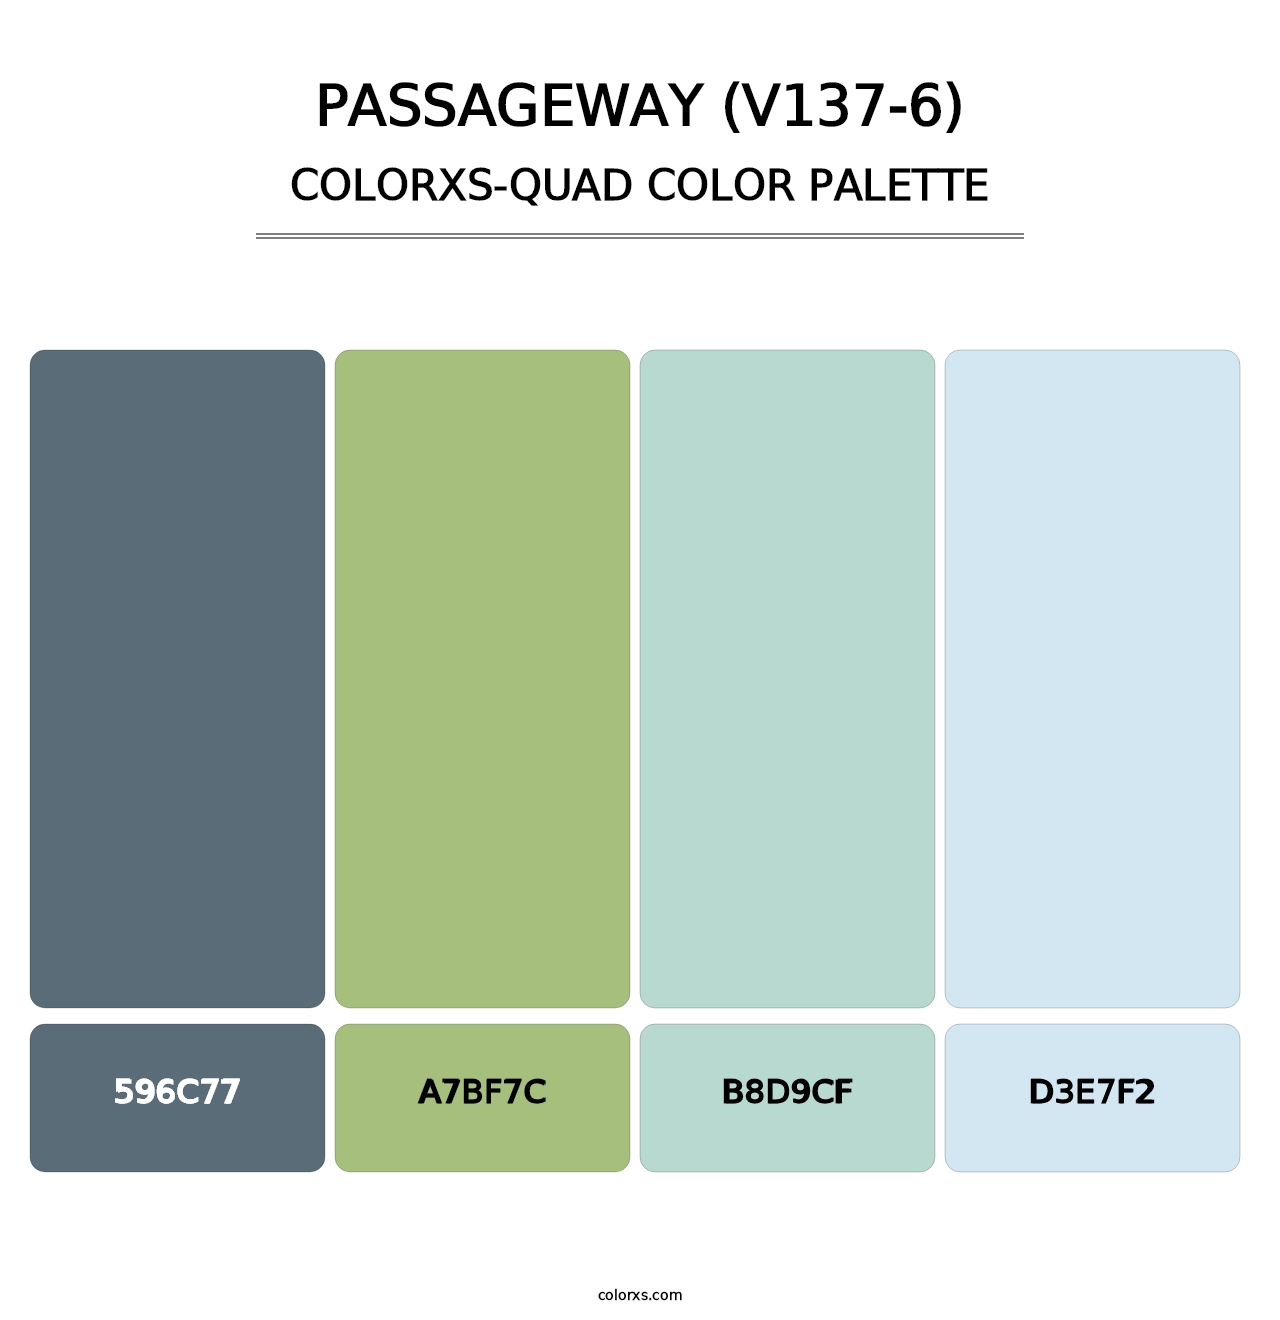 Passageway (V137-6) - Colorxs Quad Palette